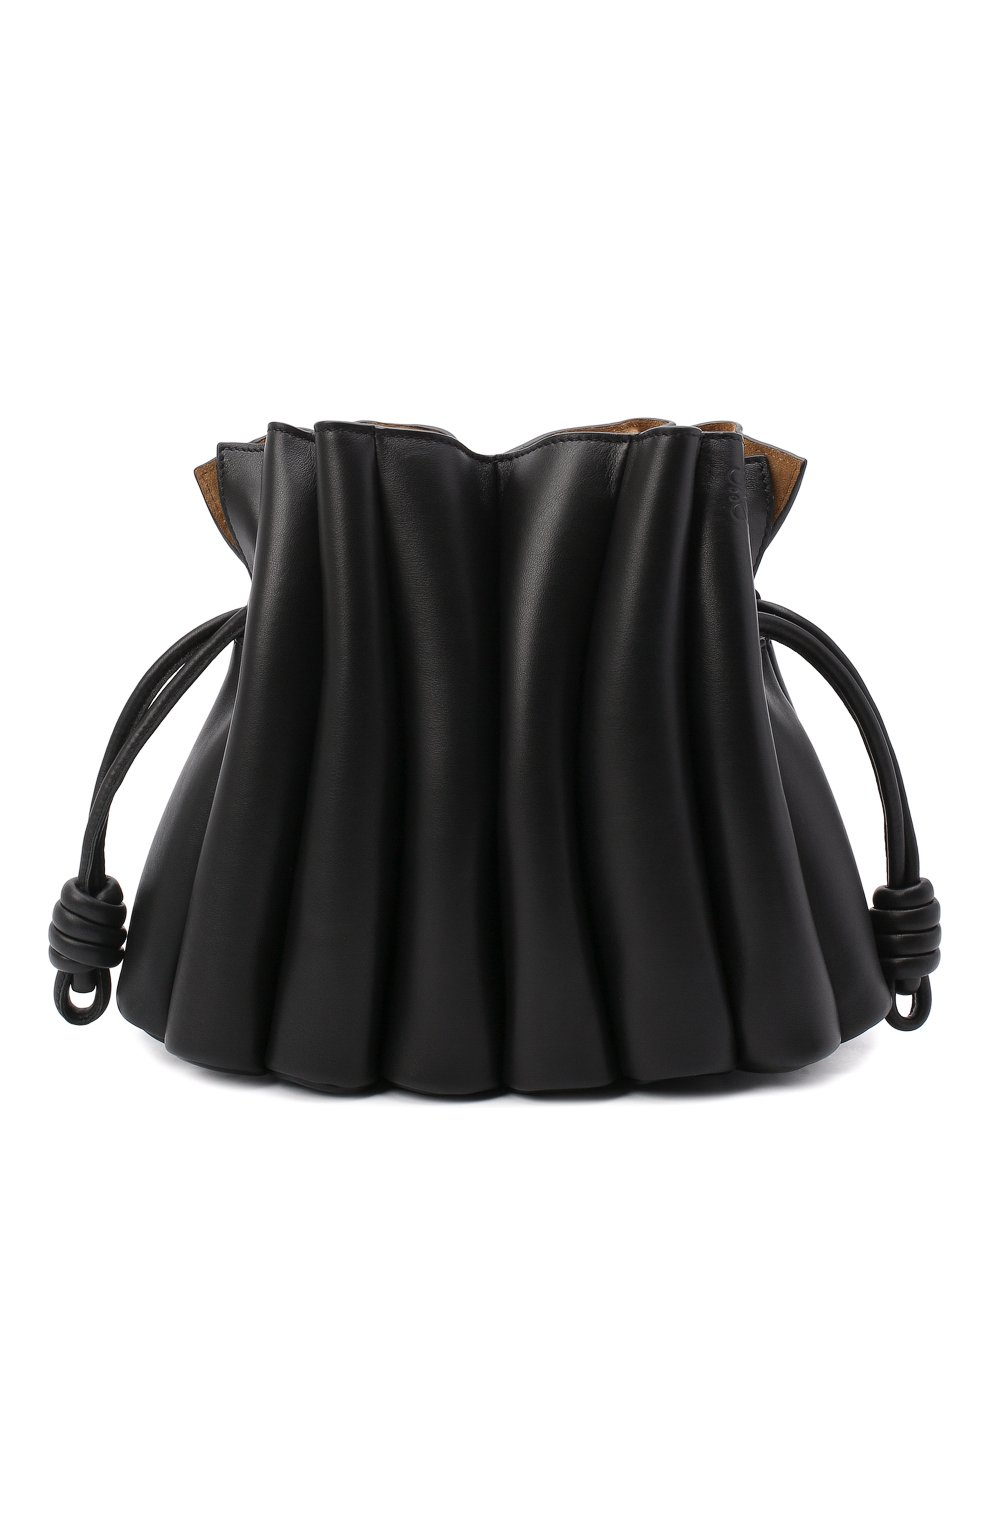 Женская черная сумка flamenco LOEWE купить в интернет-магазине ЦУМ ...